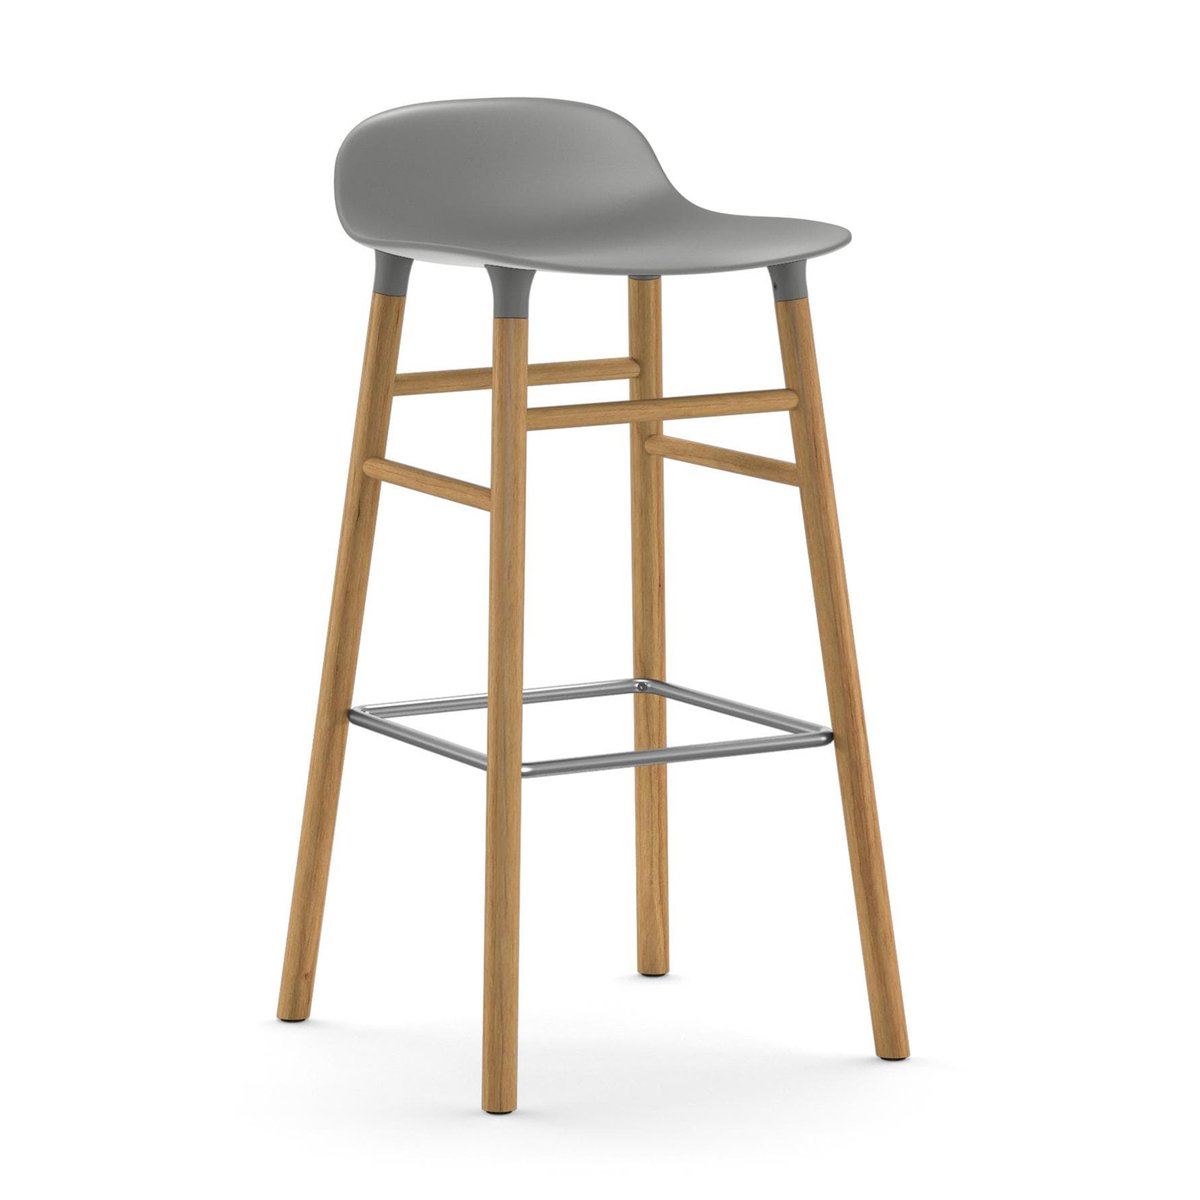 Bilde av Normann Copenhagen Form Chair barstol eikben grå